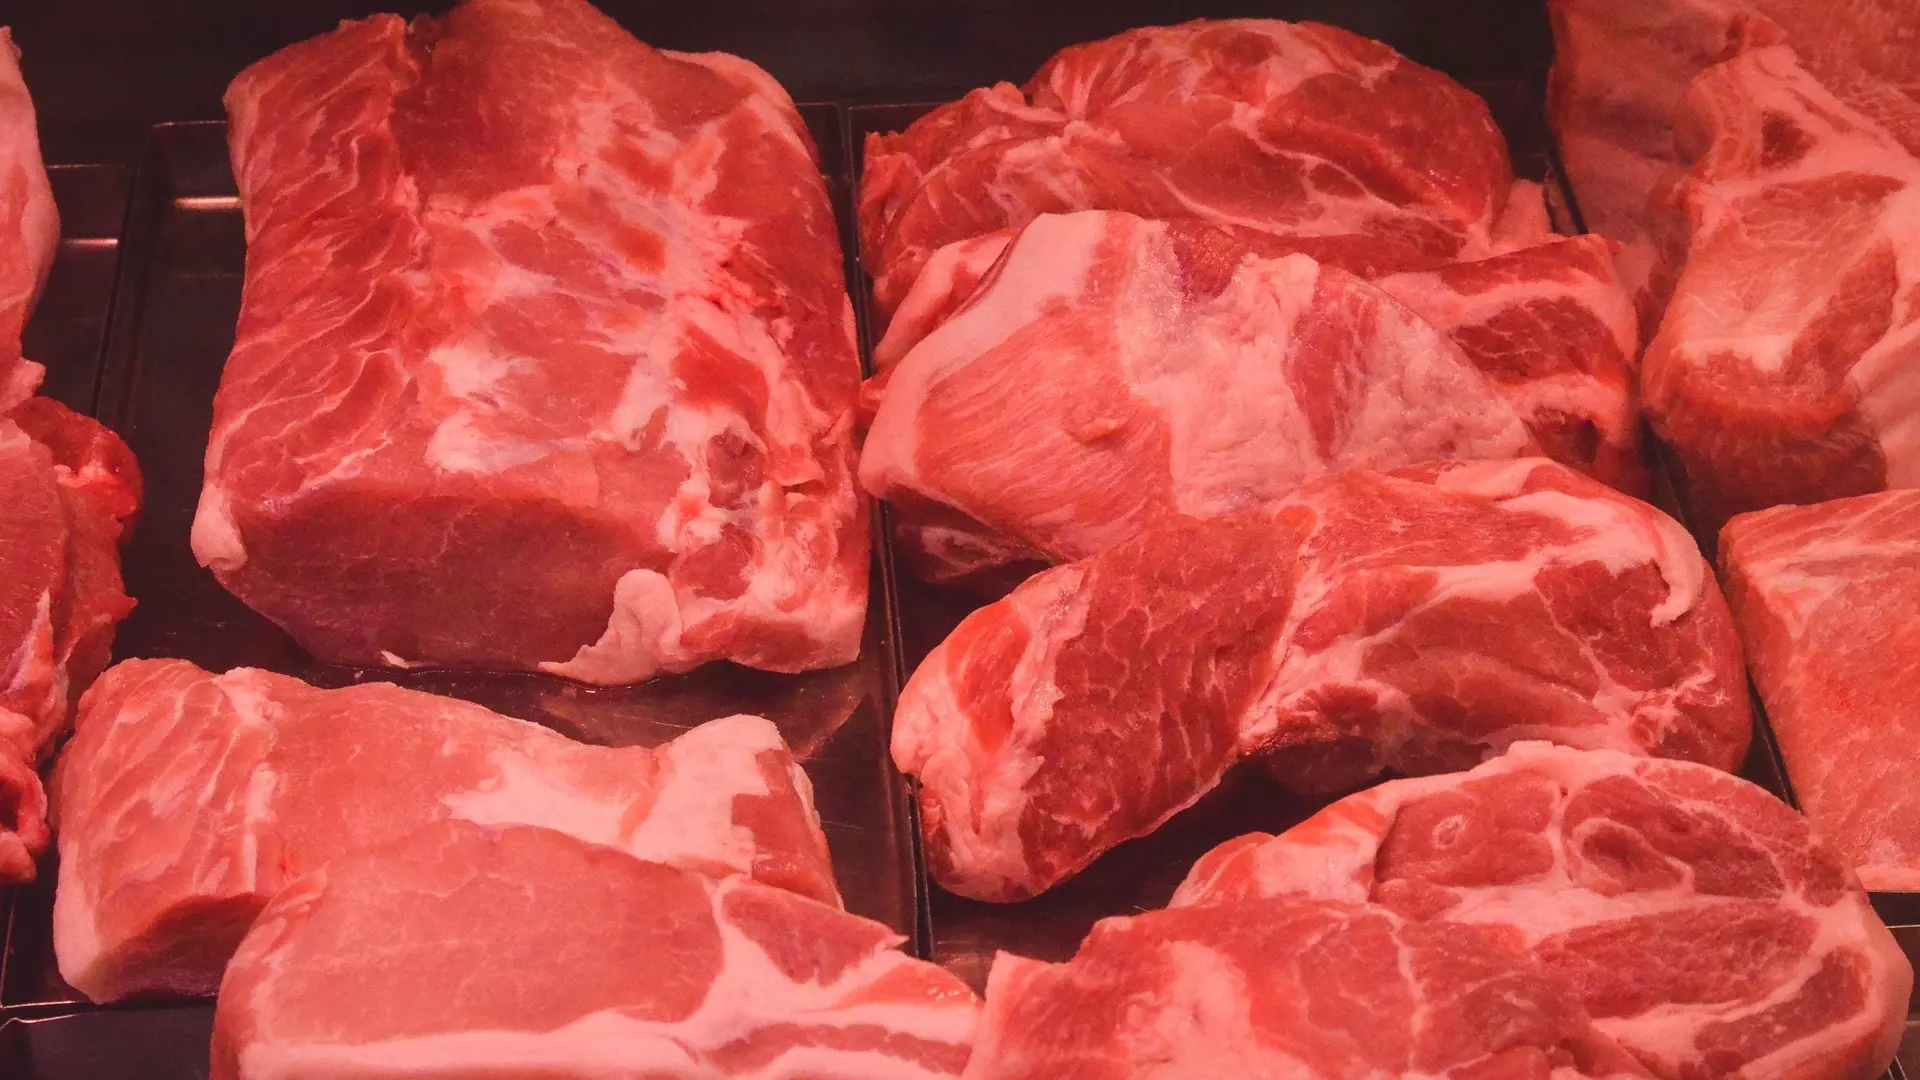 Хабаровский врач назвала ряд опасностей при приготовлении мяса